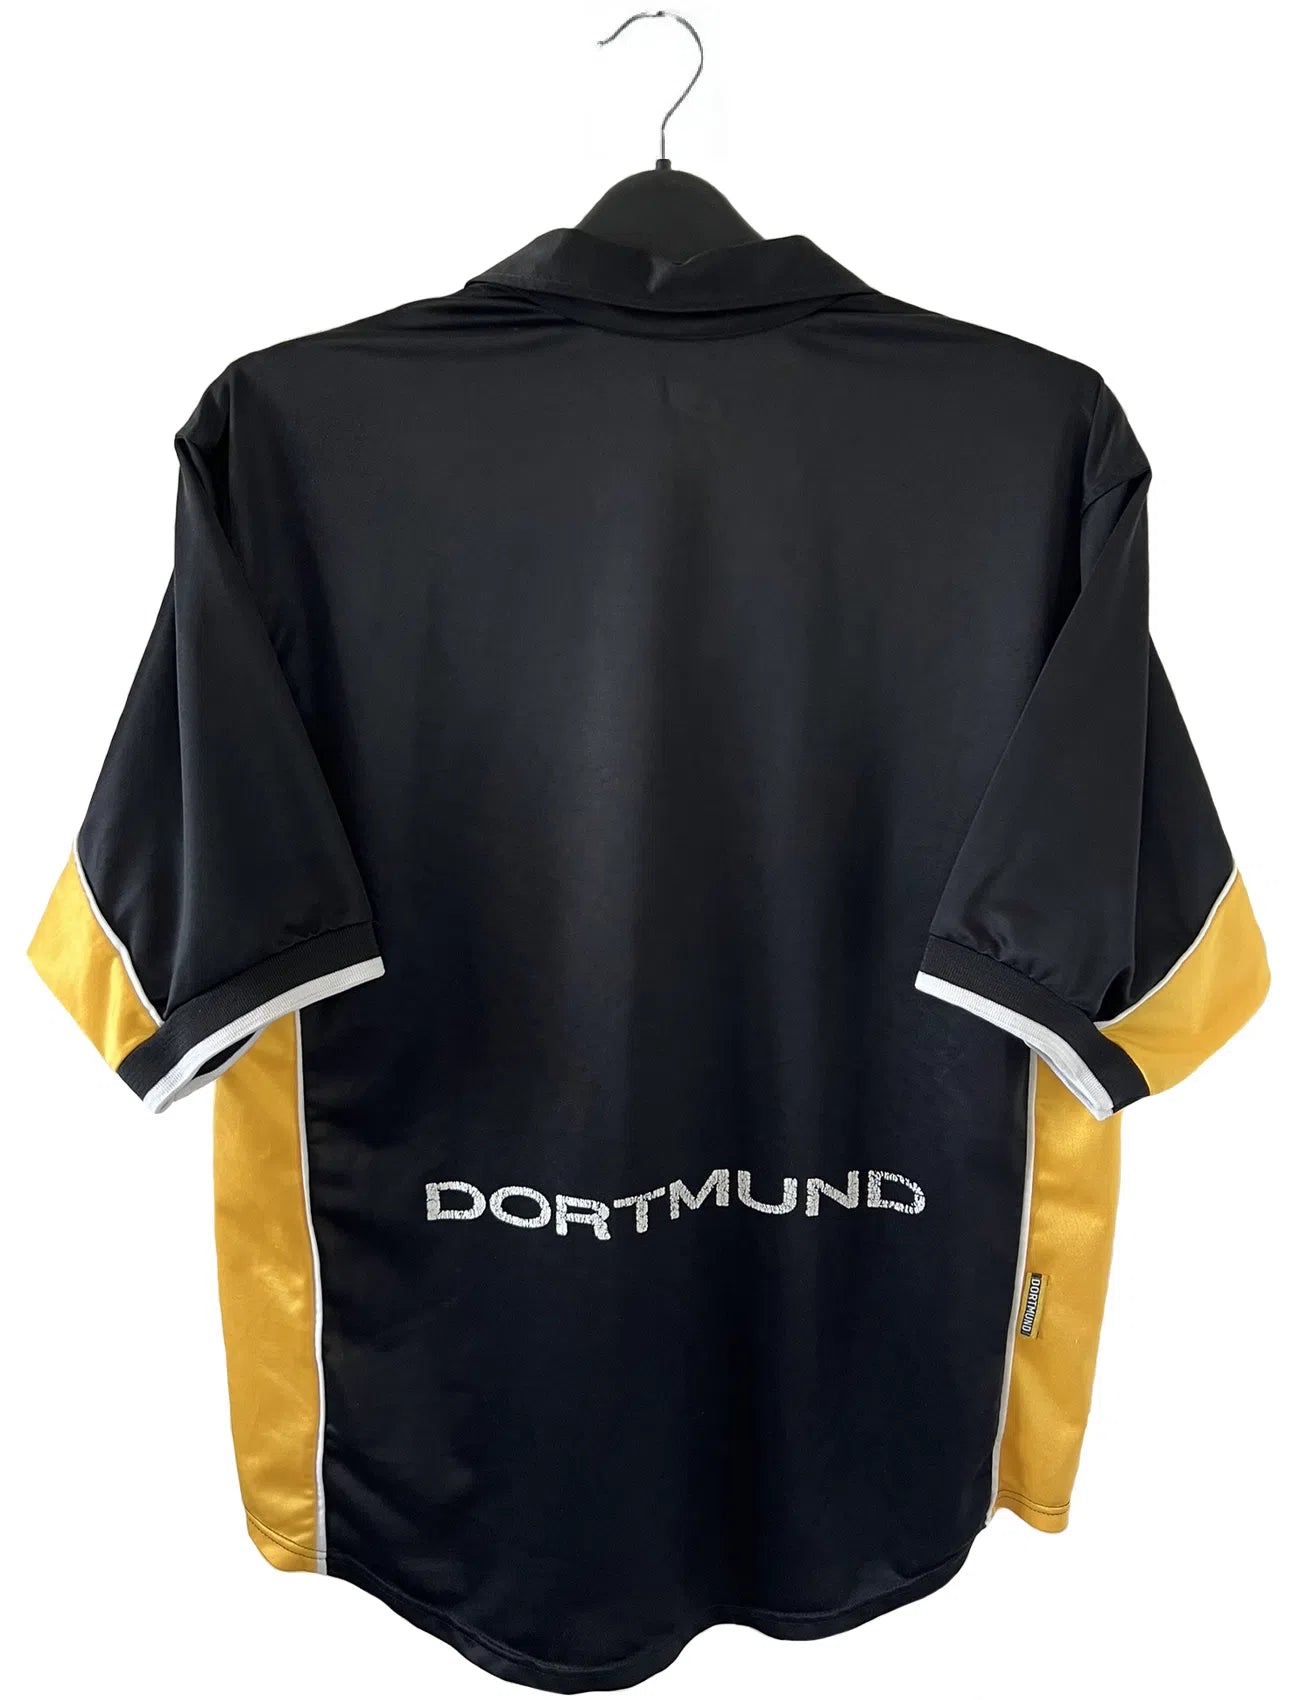 Maillot de foot vintage du Borussia Dortmund de la saison 1998/2000. Le maillot est de couleur noir et jaune. On peut retrouver l'équipementier nike et le sponsor s.Oliver. Le maillot possède l'étiquette d'authenticité F8-PKH. Il s'agit d'un maillot authentique d'époque.